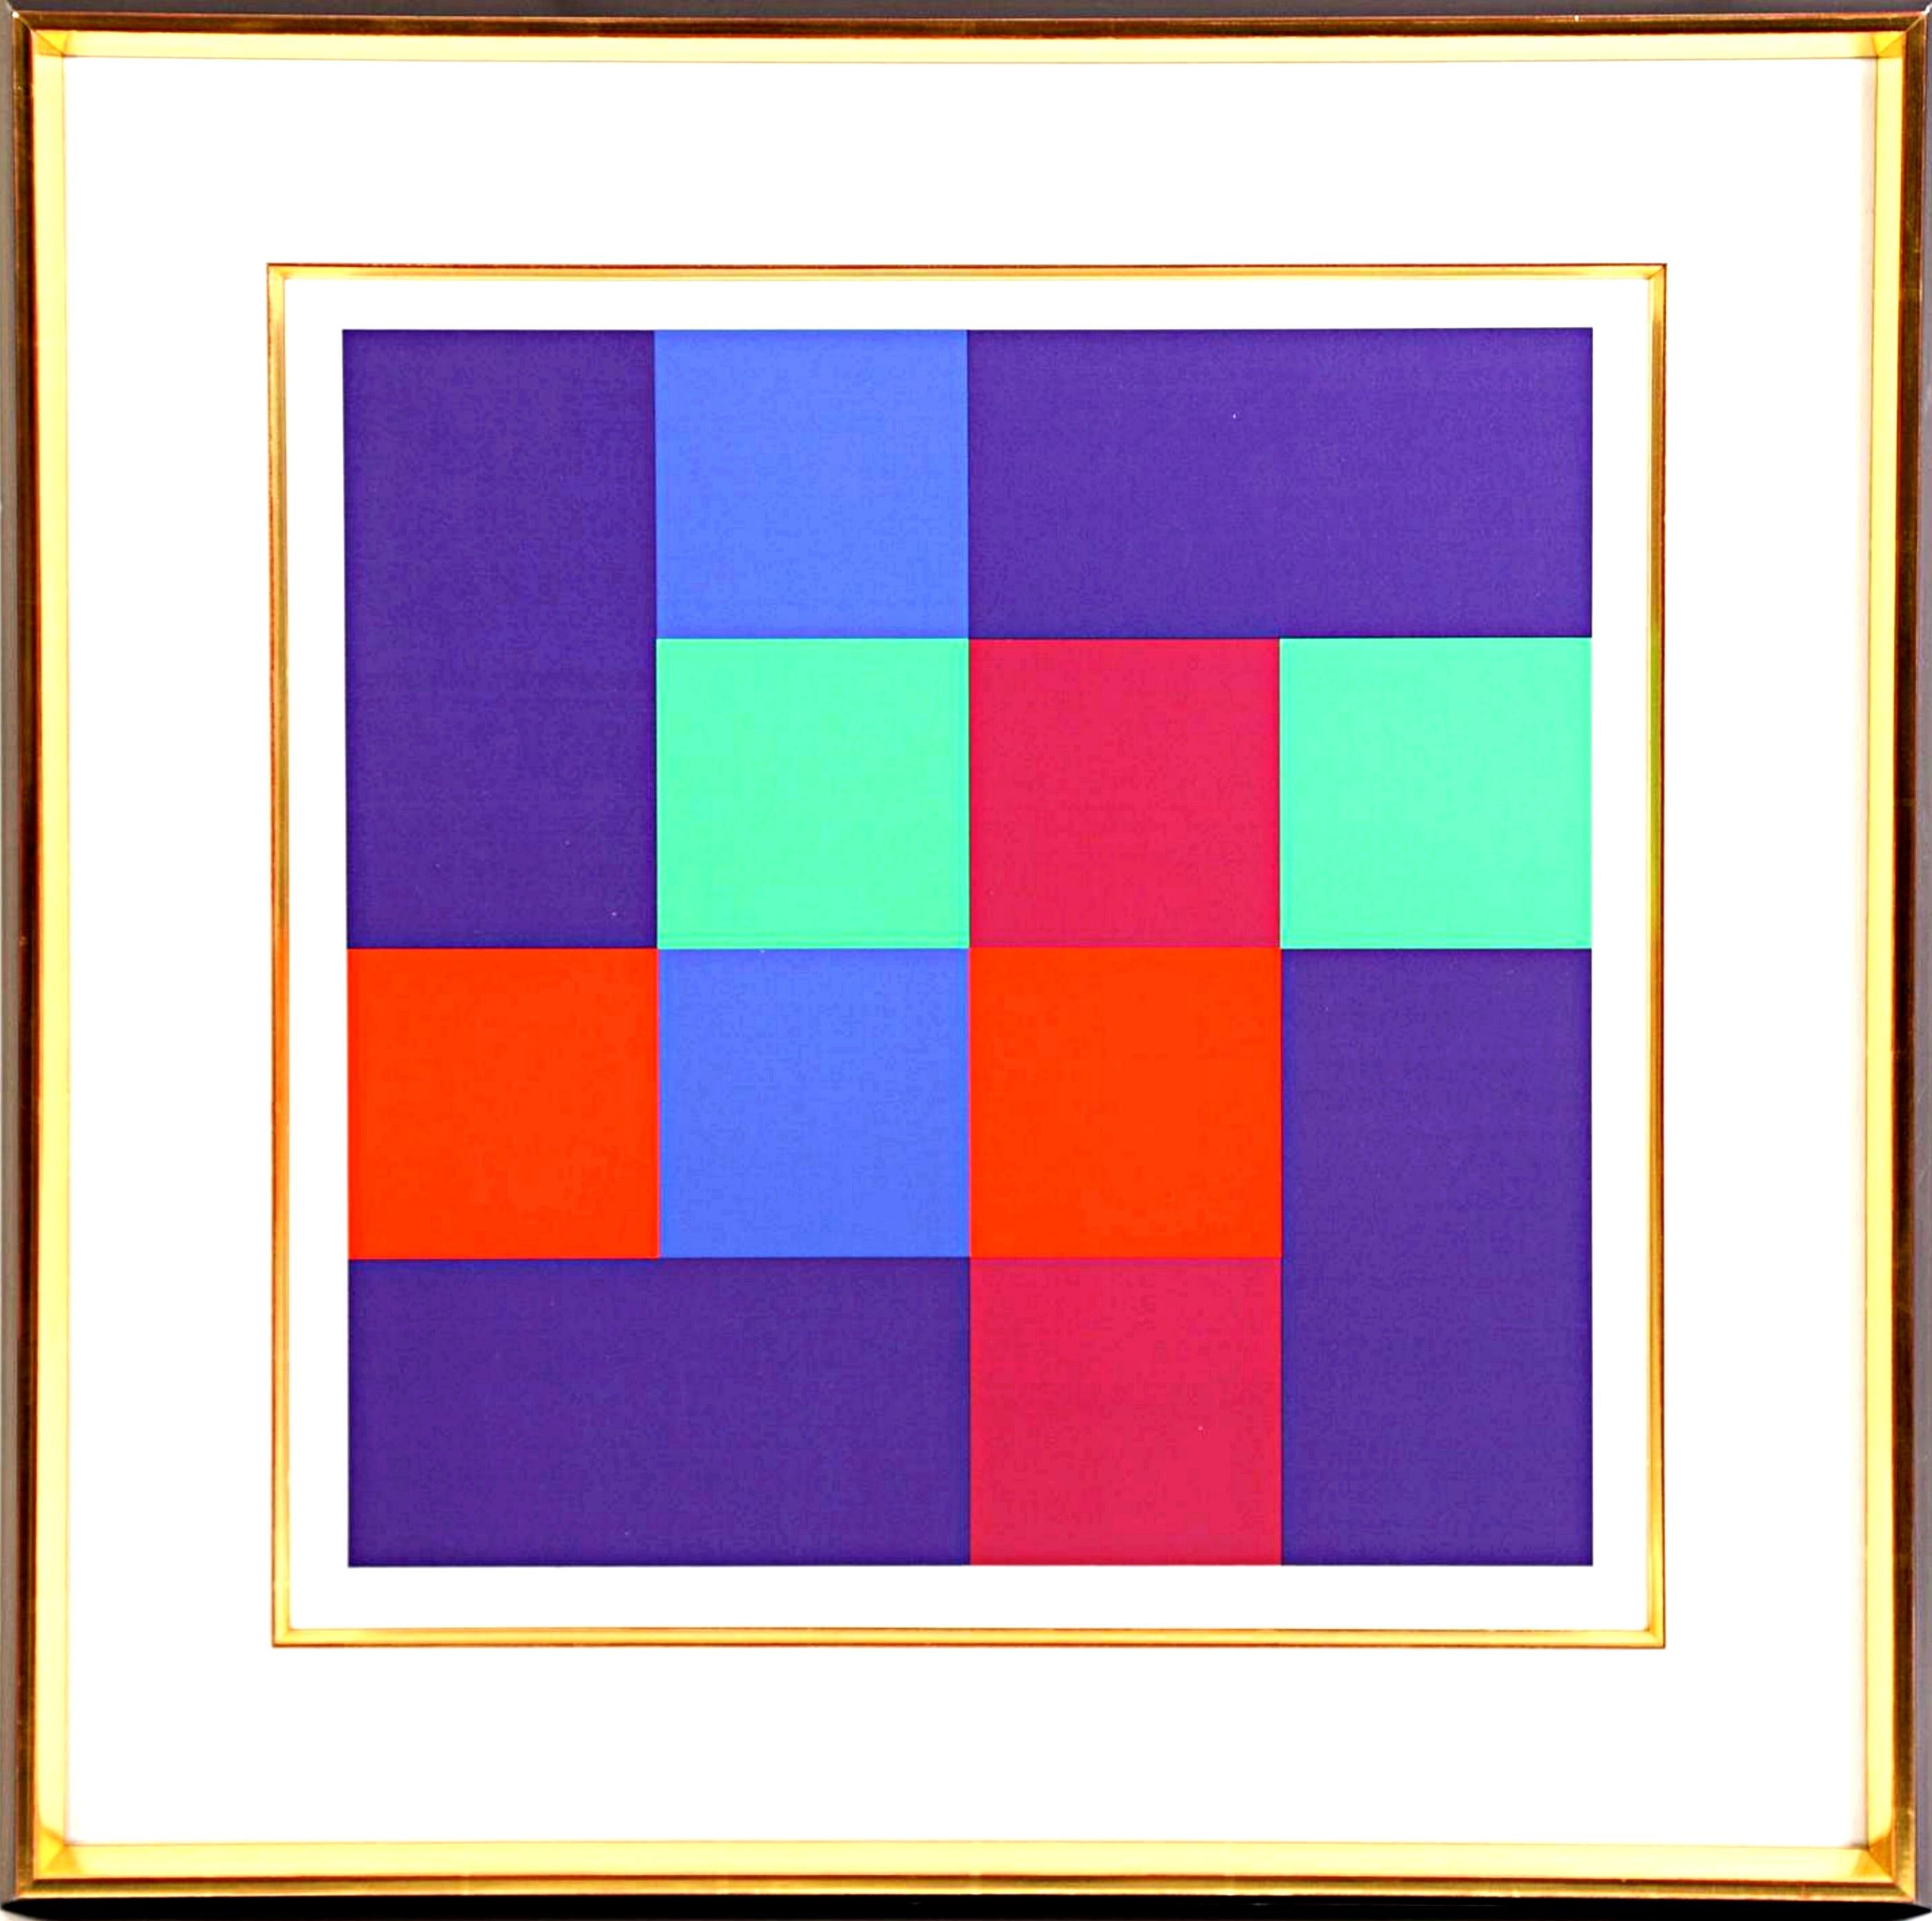 Abstract Print Richard Paul Lohse - Sérigraphie : huit carrés complémentaires avec quatre rectangles Abstraction géométrique